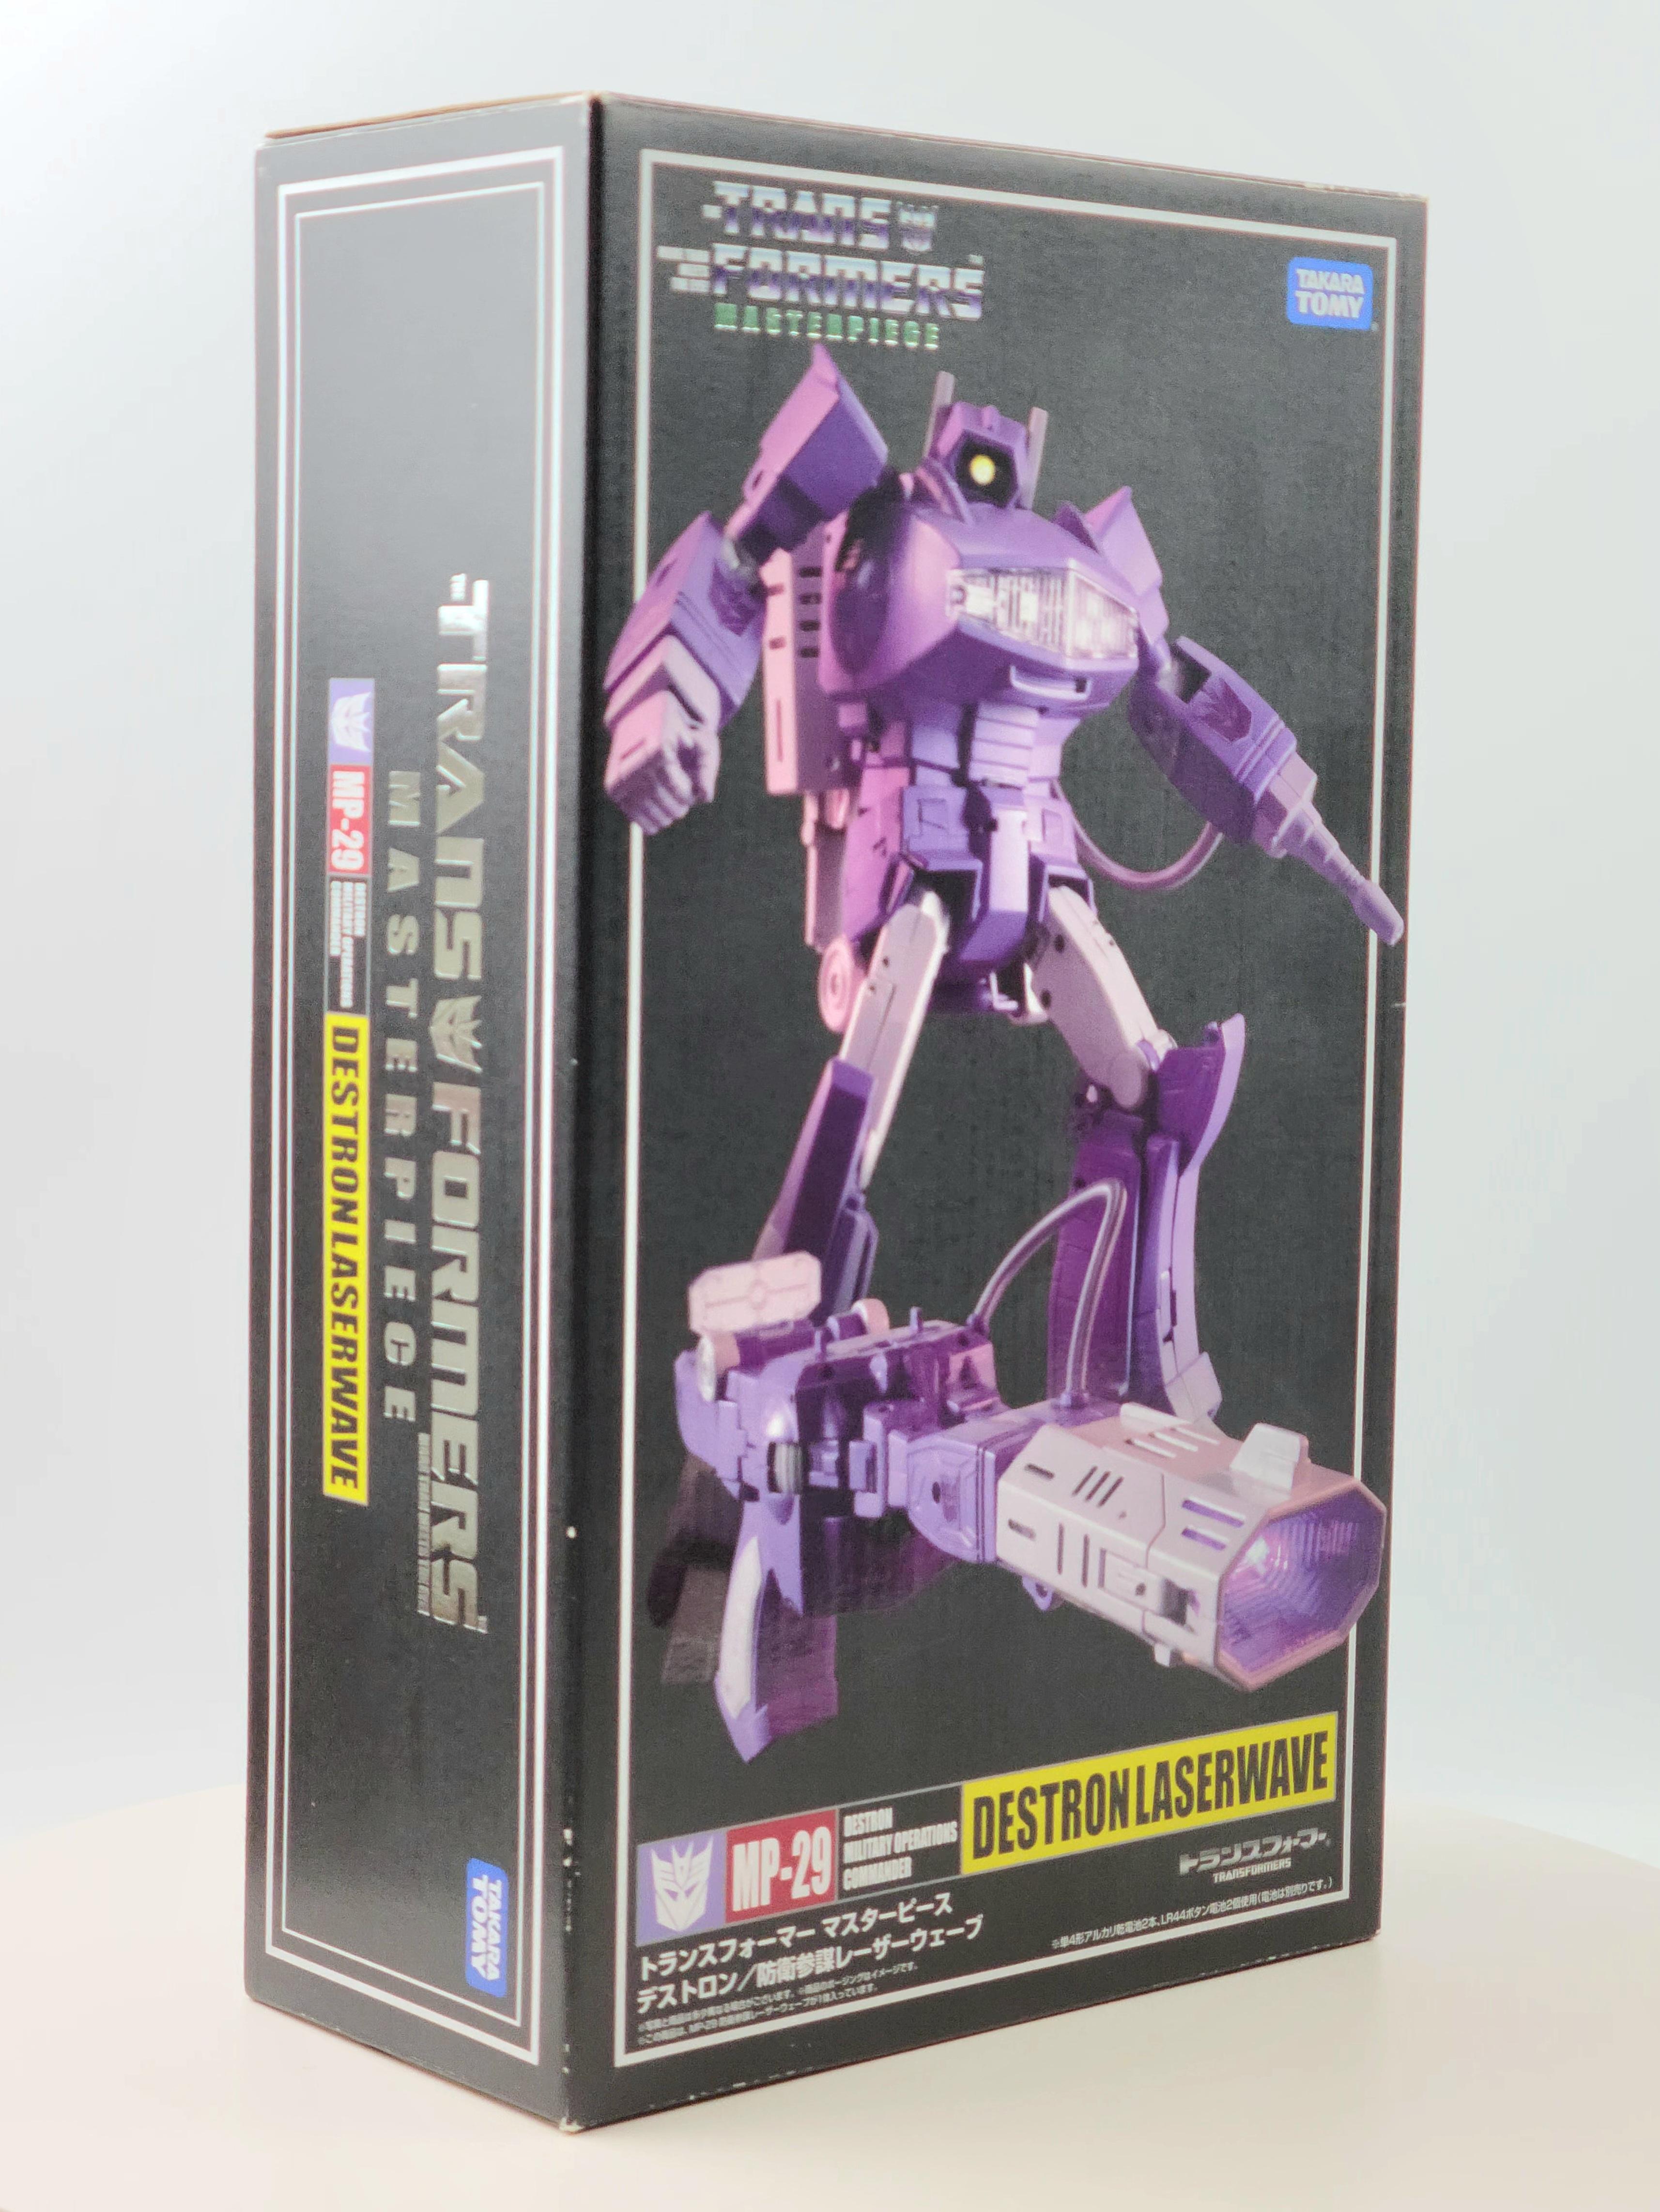 Transformers Masterpiece MP 29 Destron Laserwave BOX ONLY - NO FIGURES